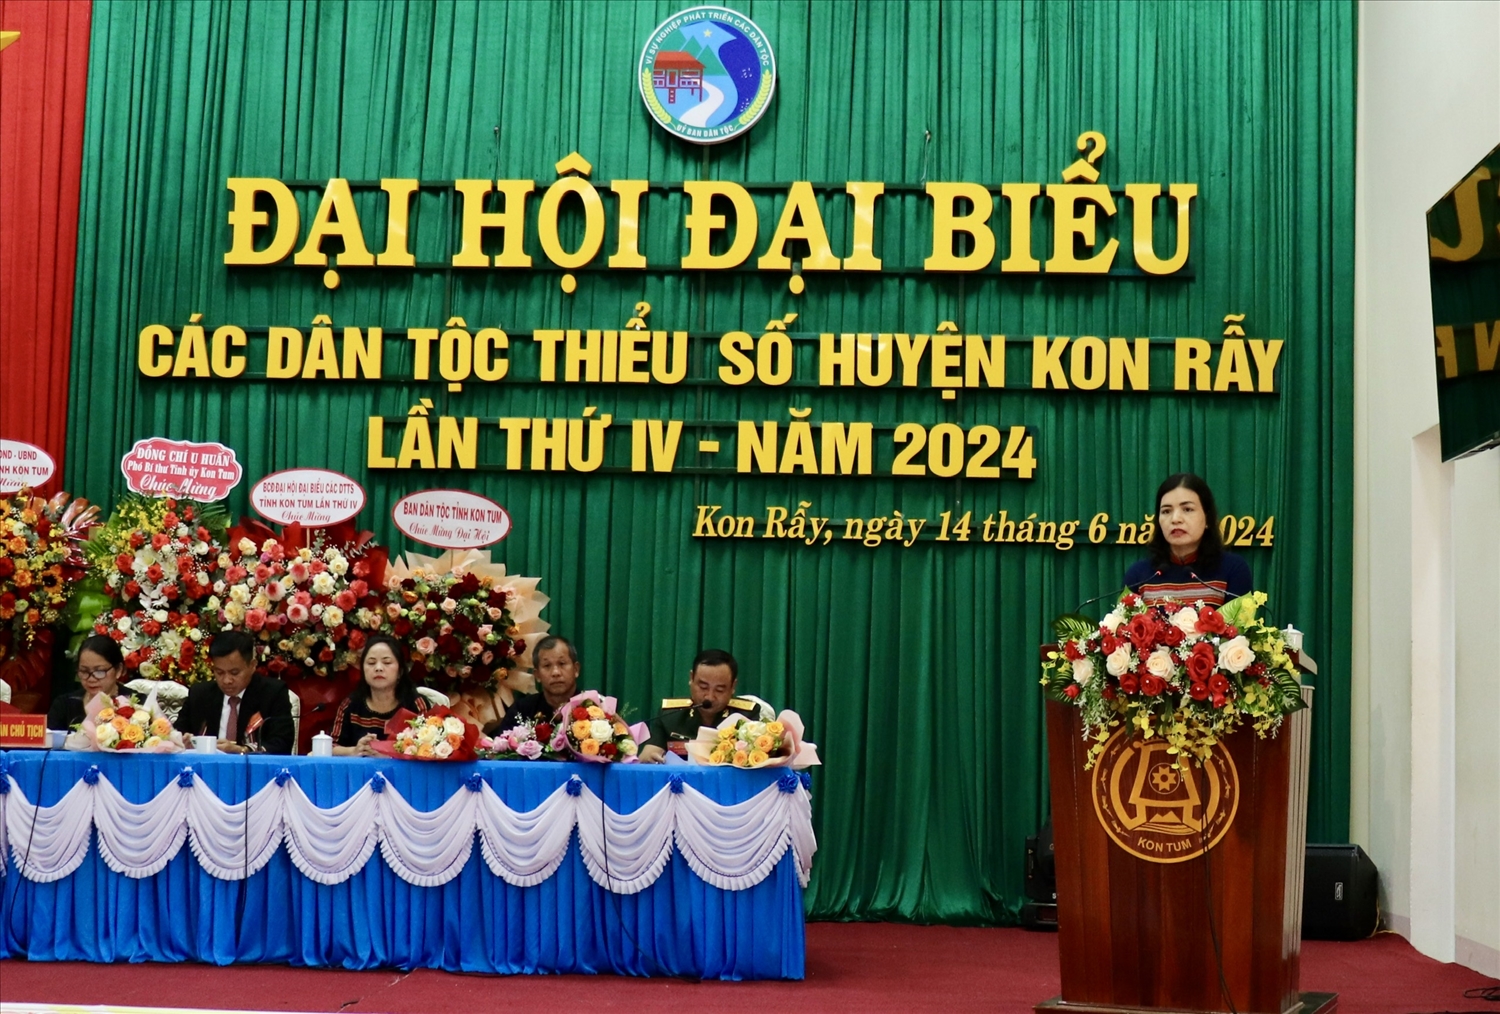 Phó Chủ tịch UBND tỉnh Kon Tum Y Ngọc phát biểu chỉ đạo tại Đại hội Đại biểu các DTTS huyện Kon Rẫy lần thứ IV